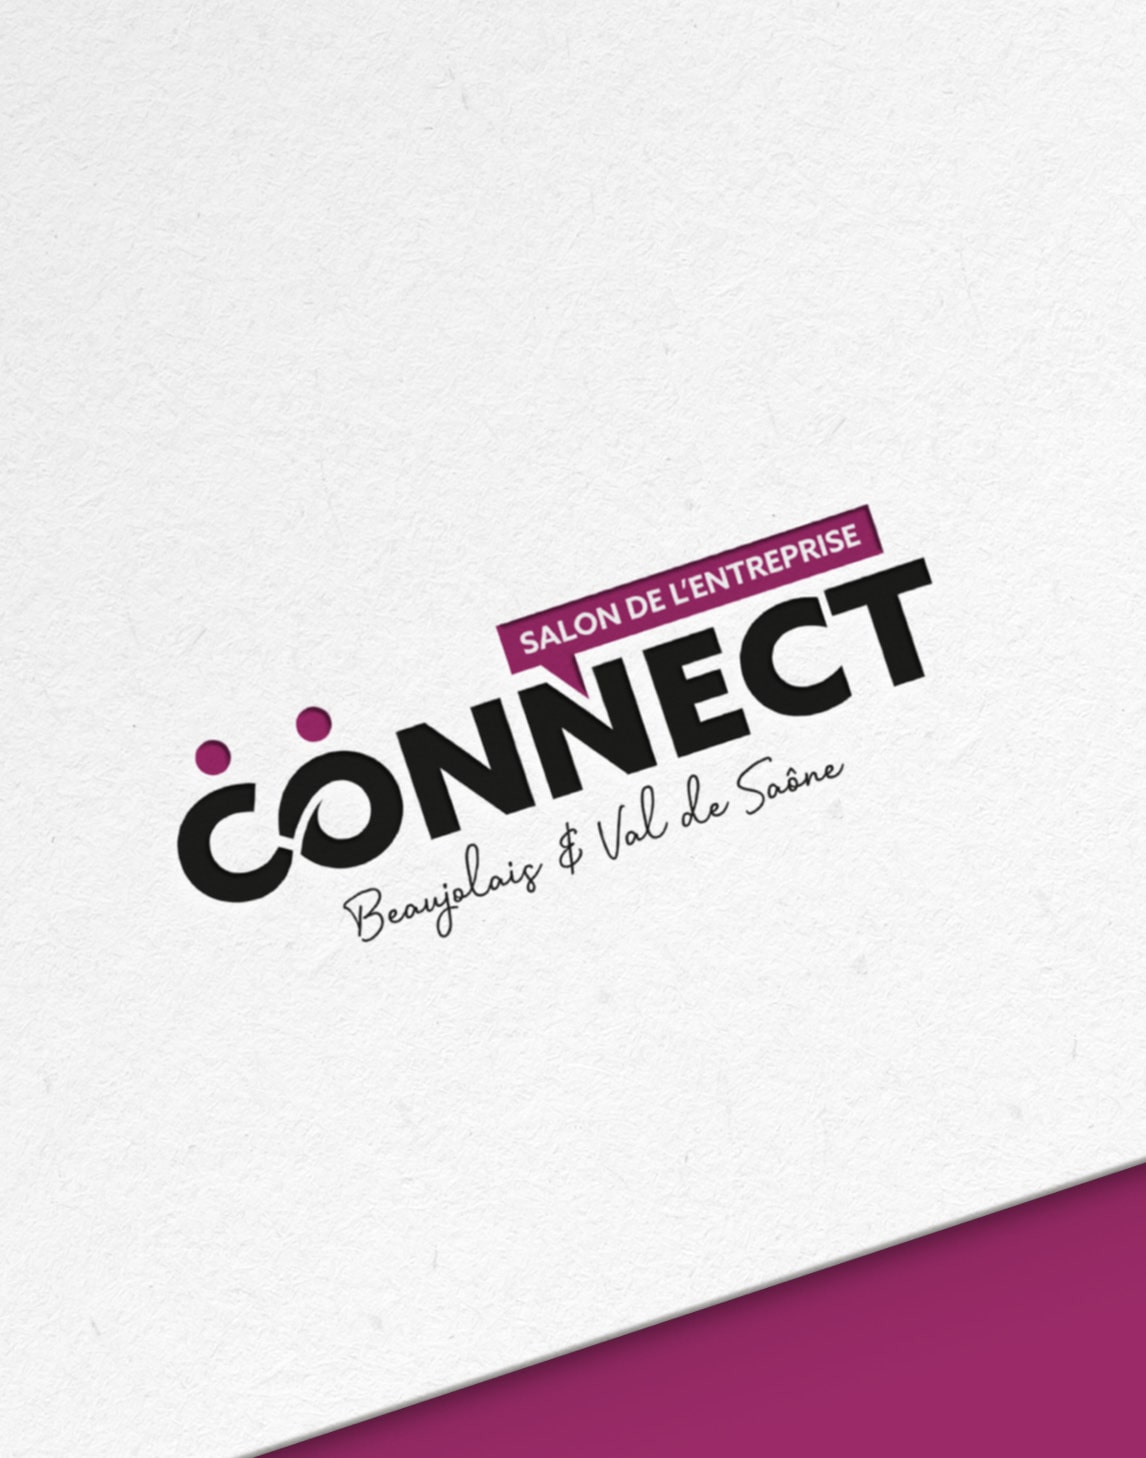 Création du logo pour le salon de l'entreprise Connect à Villefranche-sur-Saône